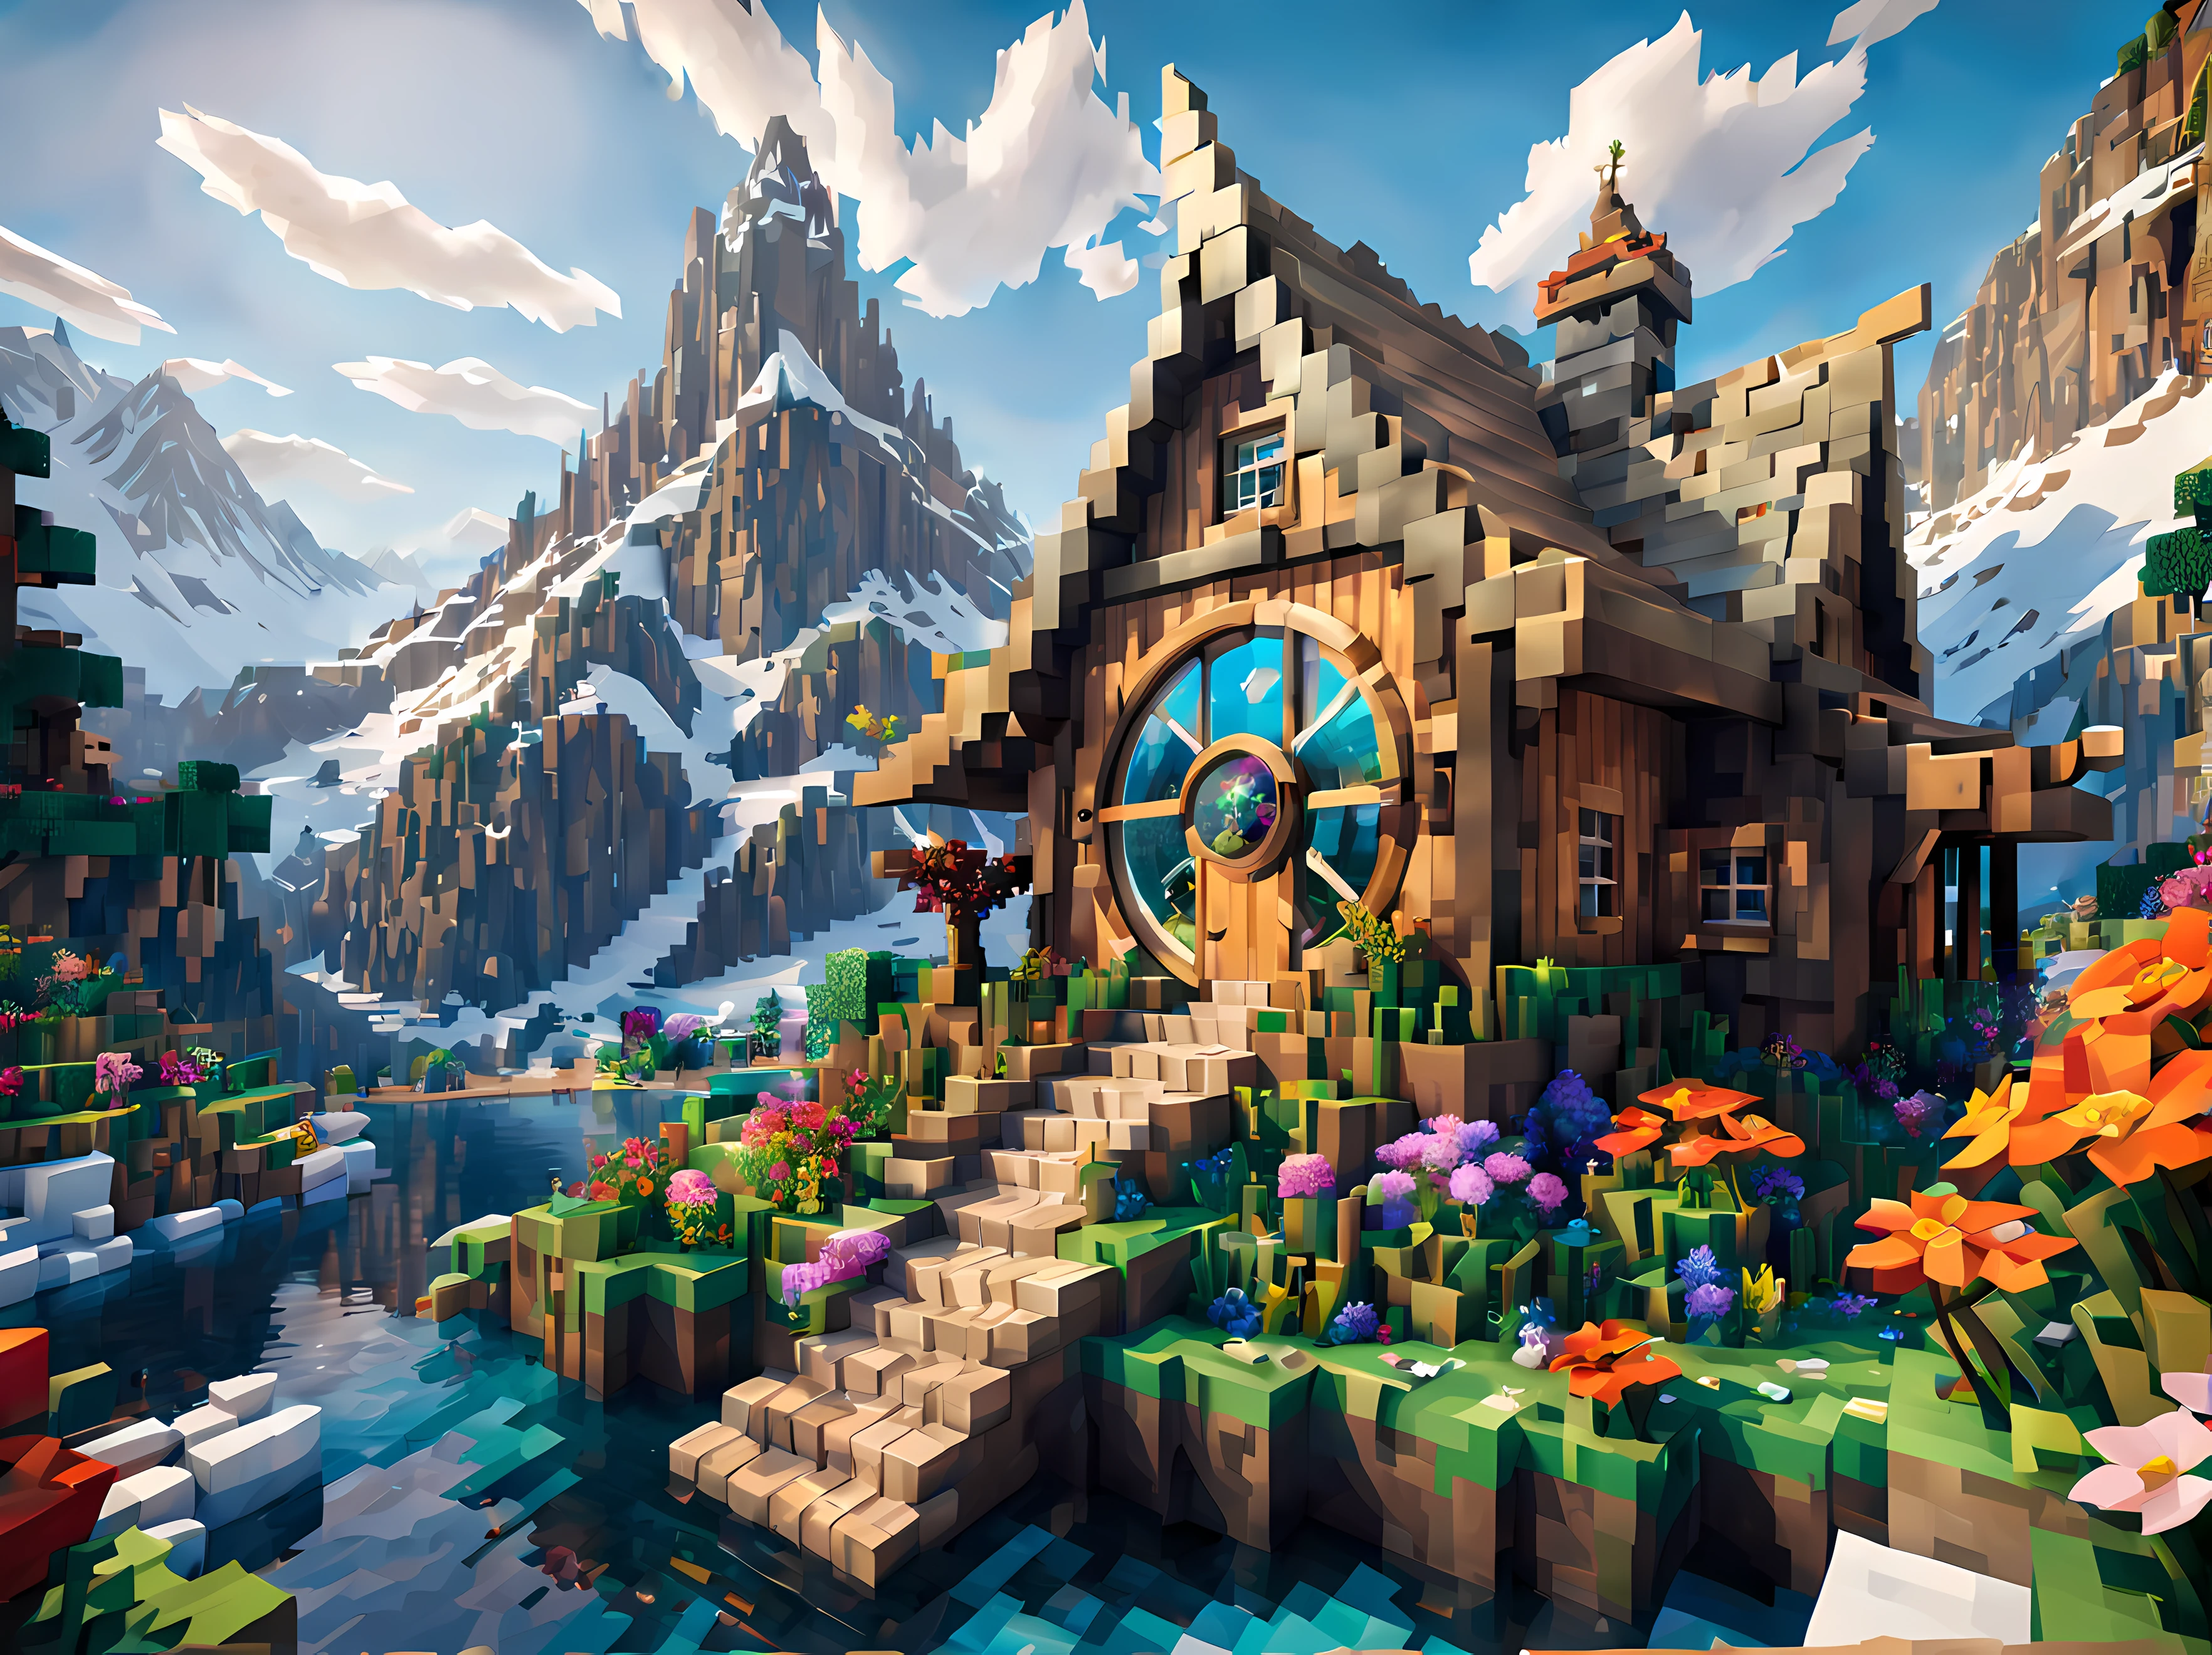 Style Minecraft (Ultraréaliste:1.3), grand (Fée) cabine avec fenêtres rondes, art environnementalwork, art environnemental, Décorations élégantes, festin, piler, (pêche), (Beau:1.4), (attractif:1.3), montagnes enneigées épiques, nature venteuse été, En bloc, pixelisé, couleurs vives, (dragon dans le ciel), fleurs